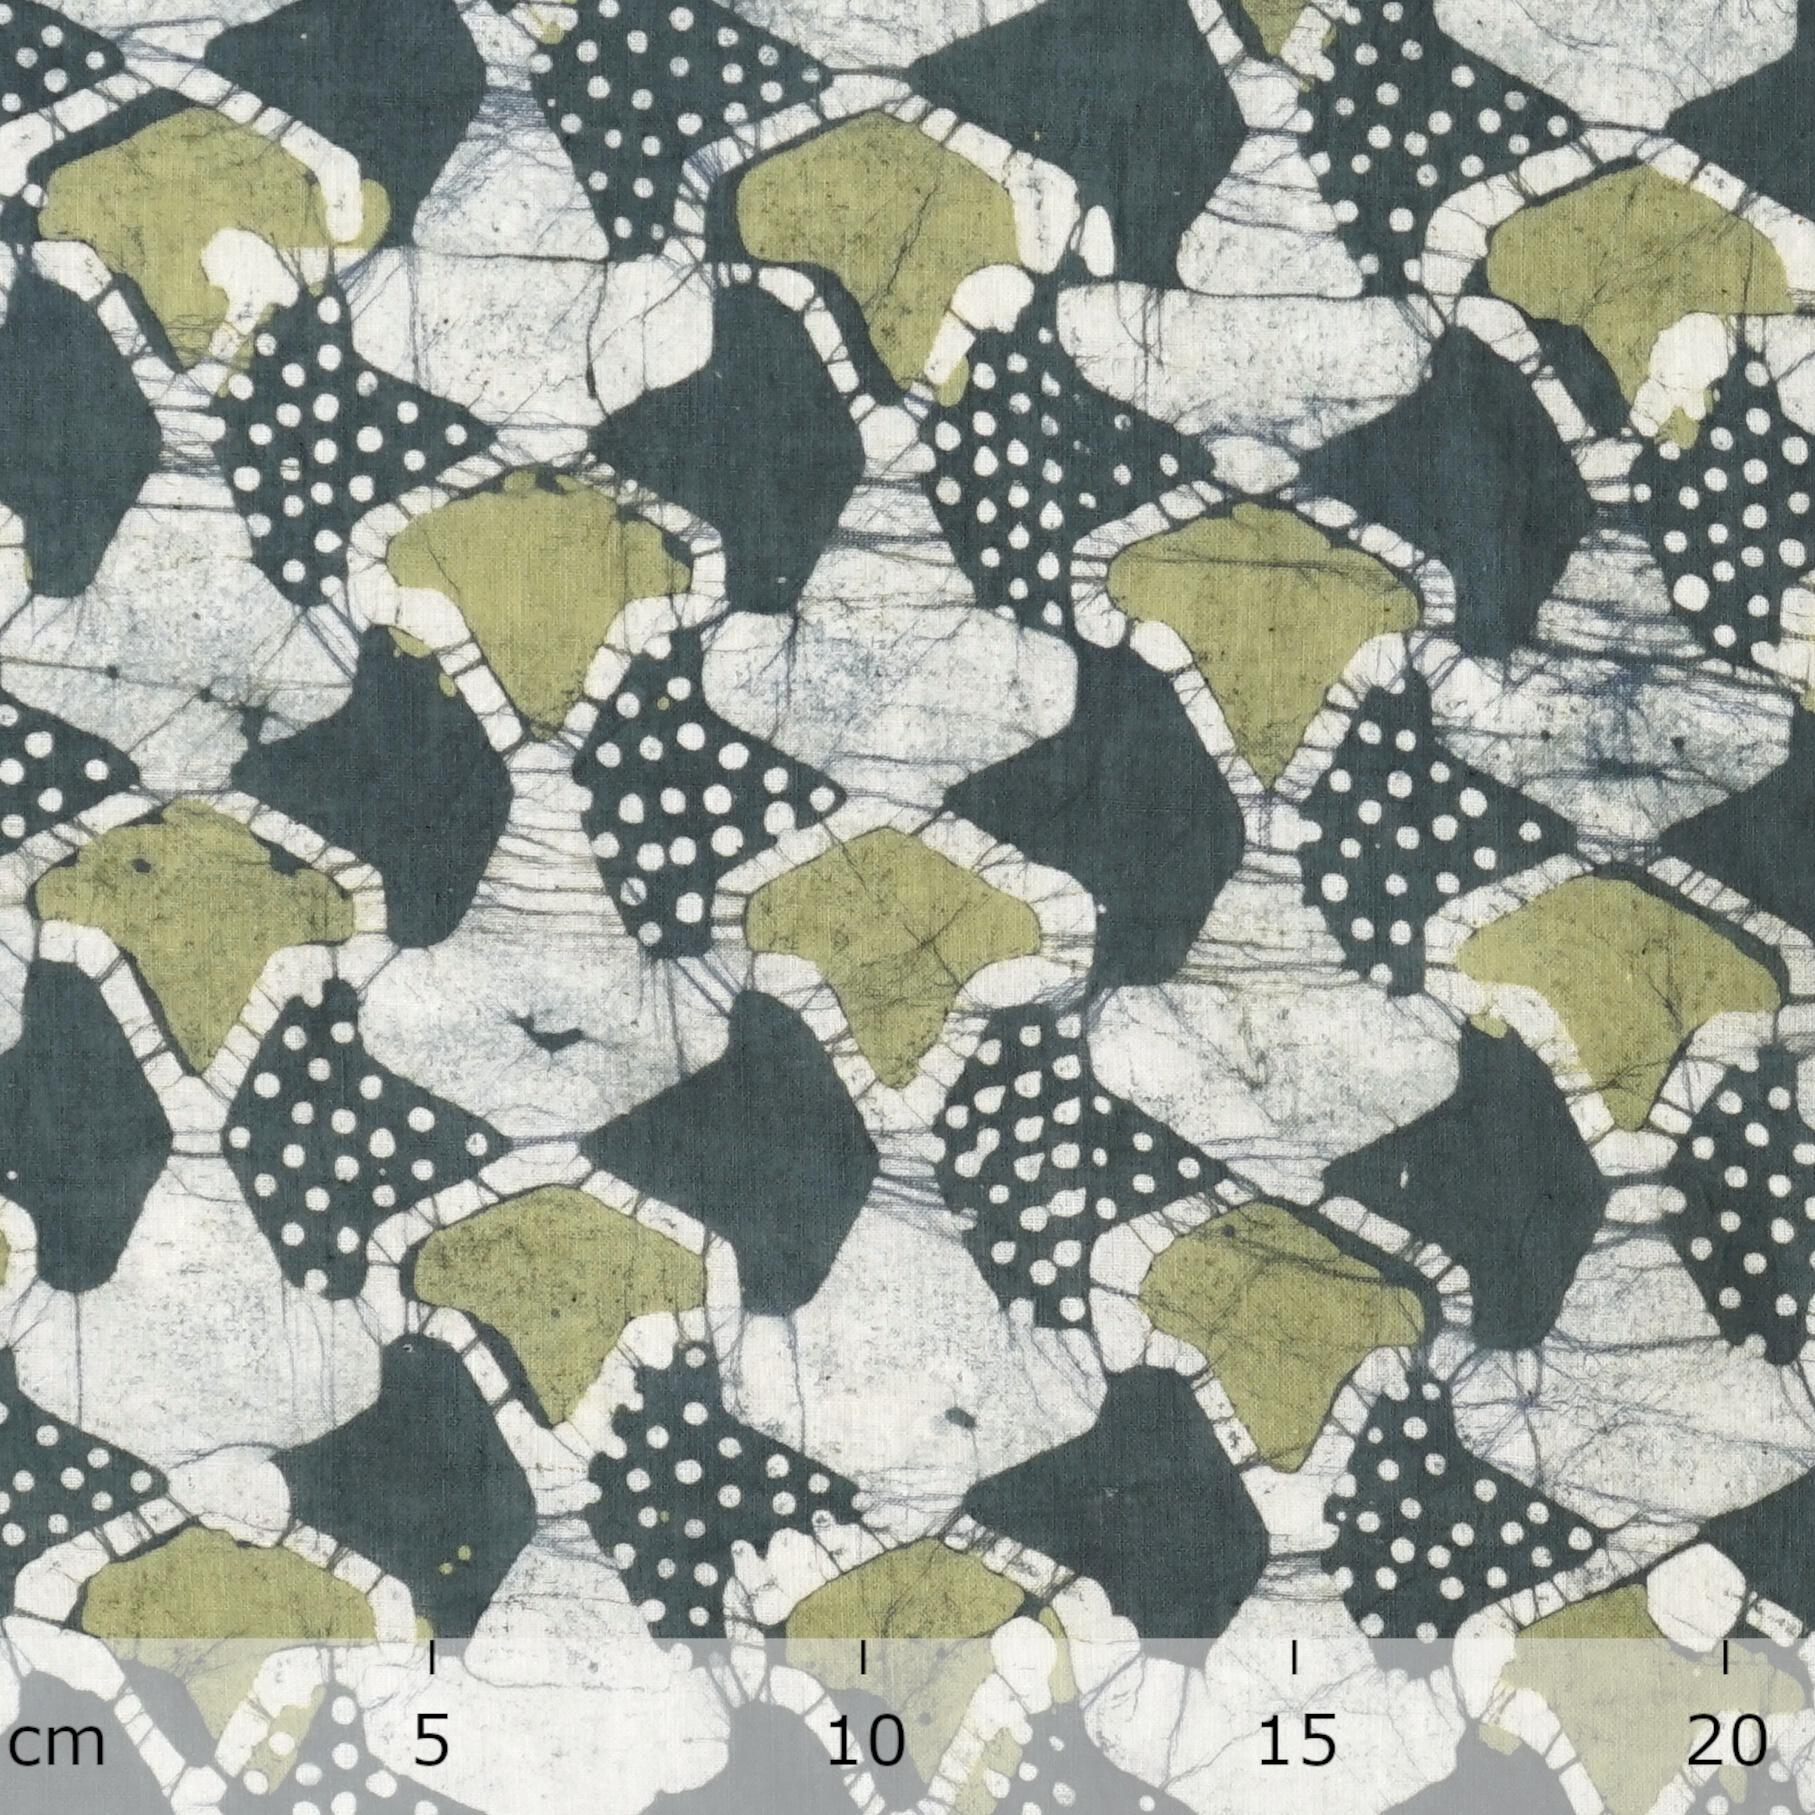 100% Block-Printed Batik Cotton Fabric From India - Sea Sponge Motif - Ruler